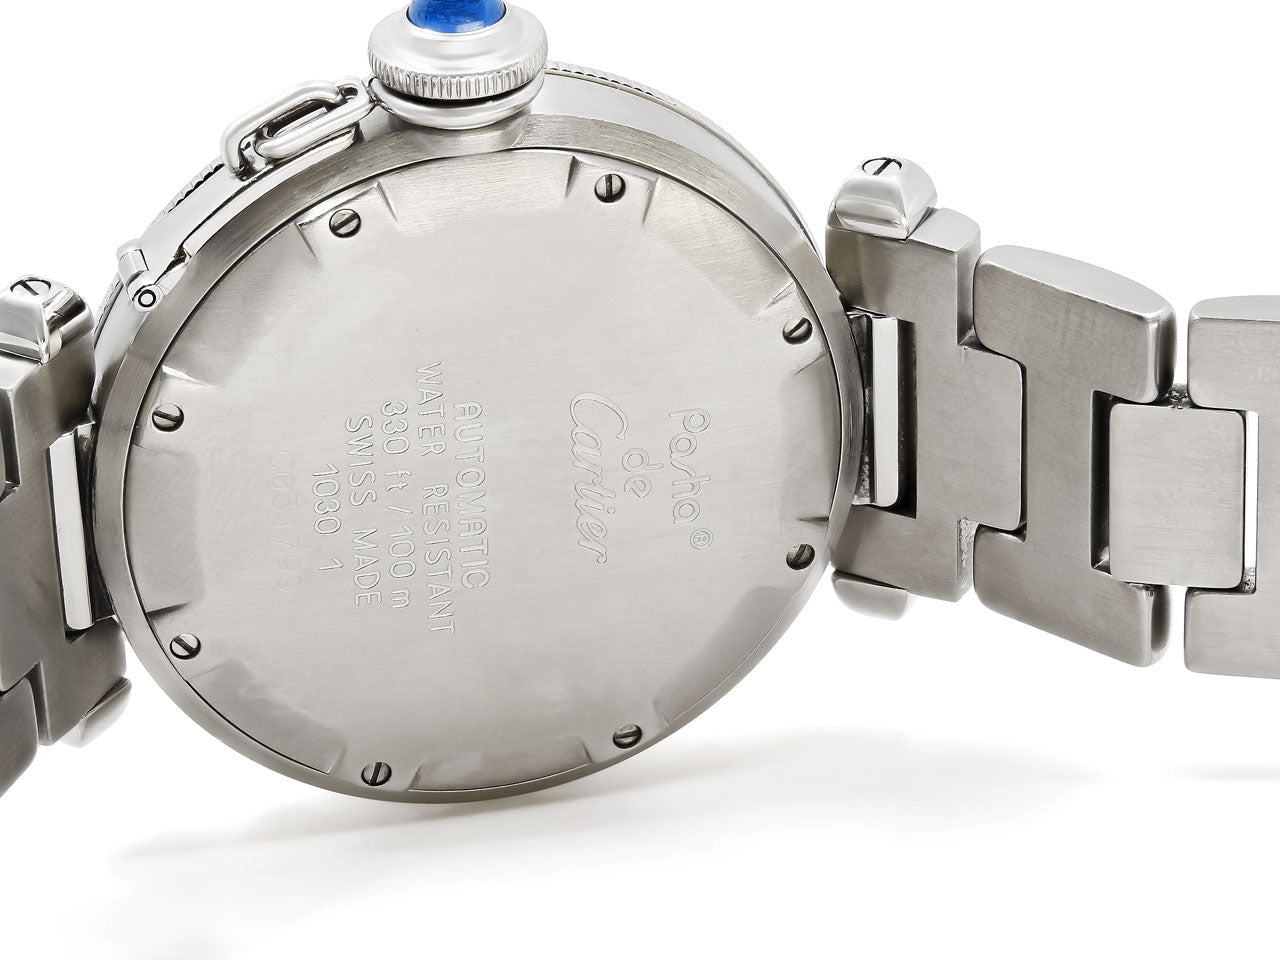 Cartier 'Pasha de Cartier' Watch in Stainless Steel, 35 mm